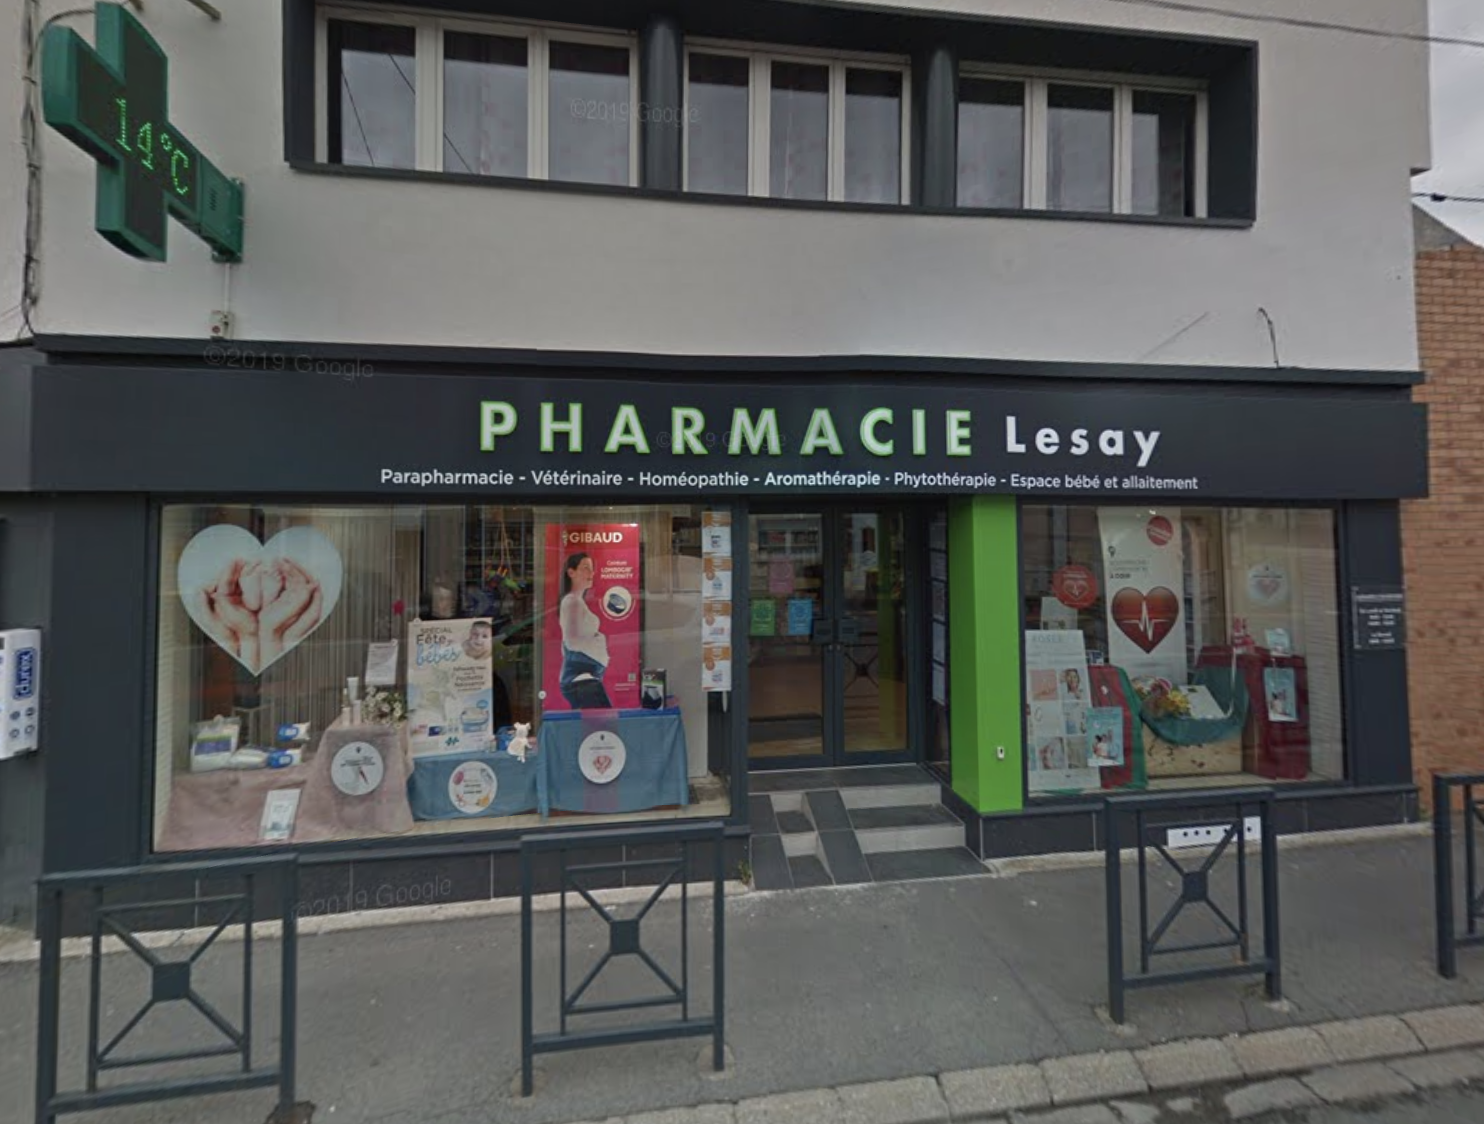 Pharmacie Lesay